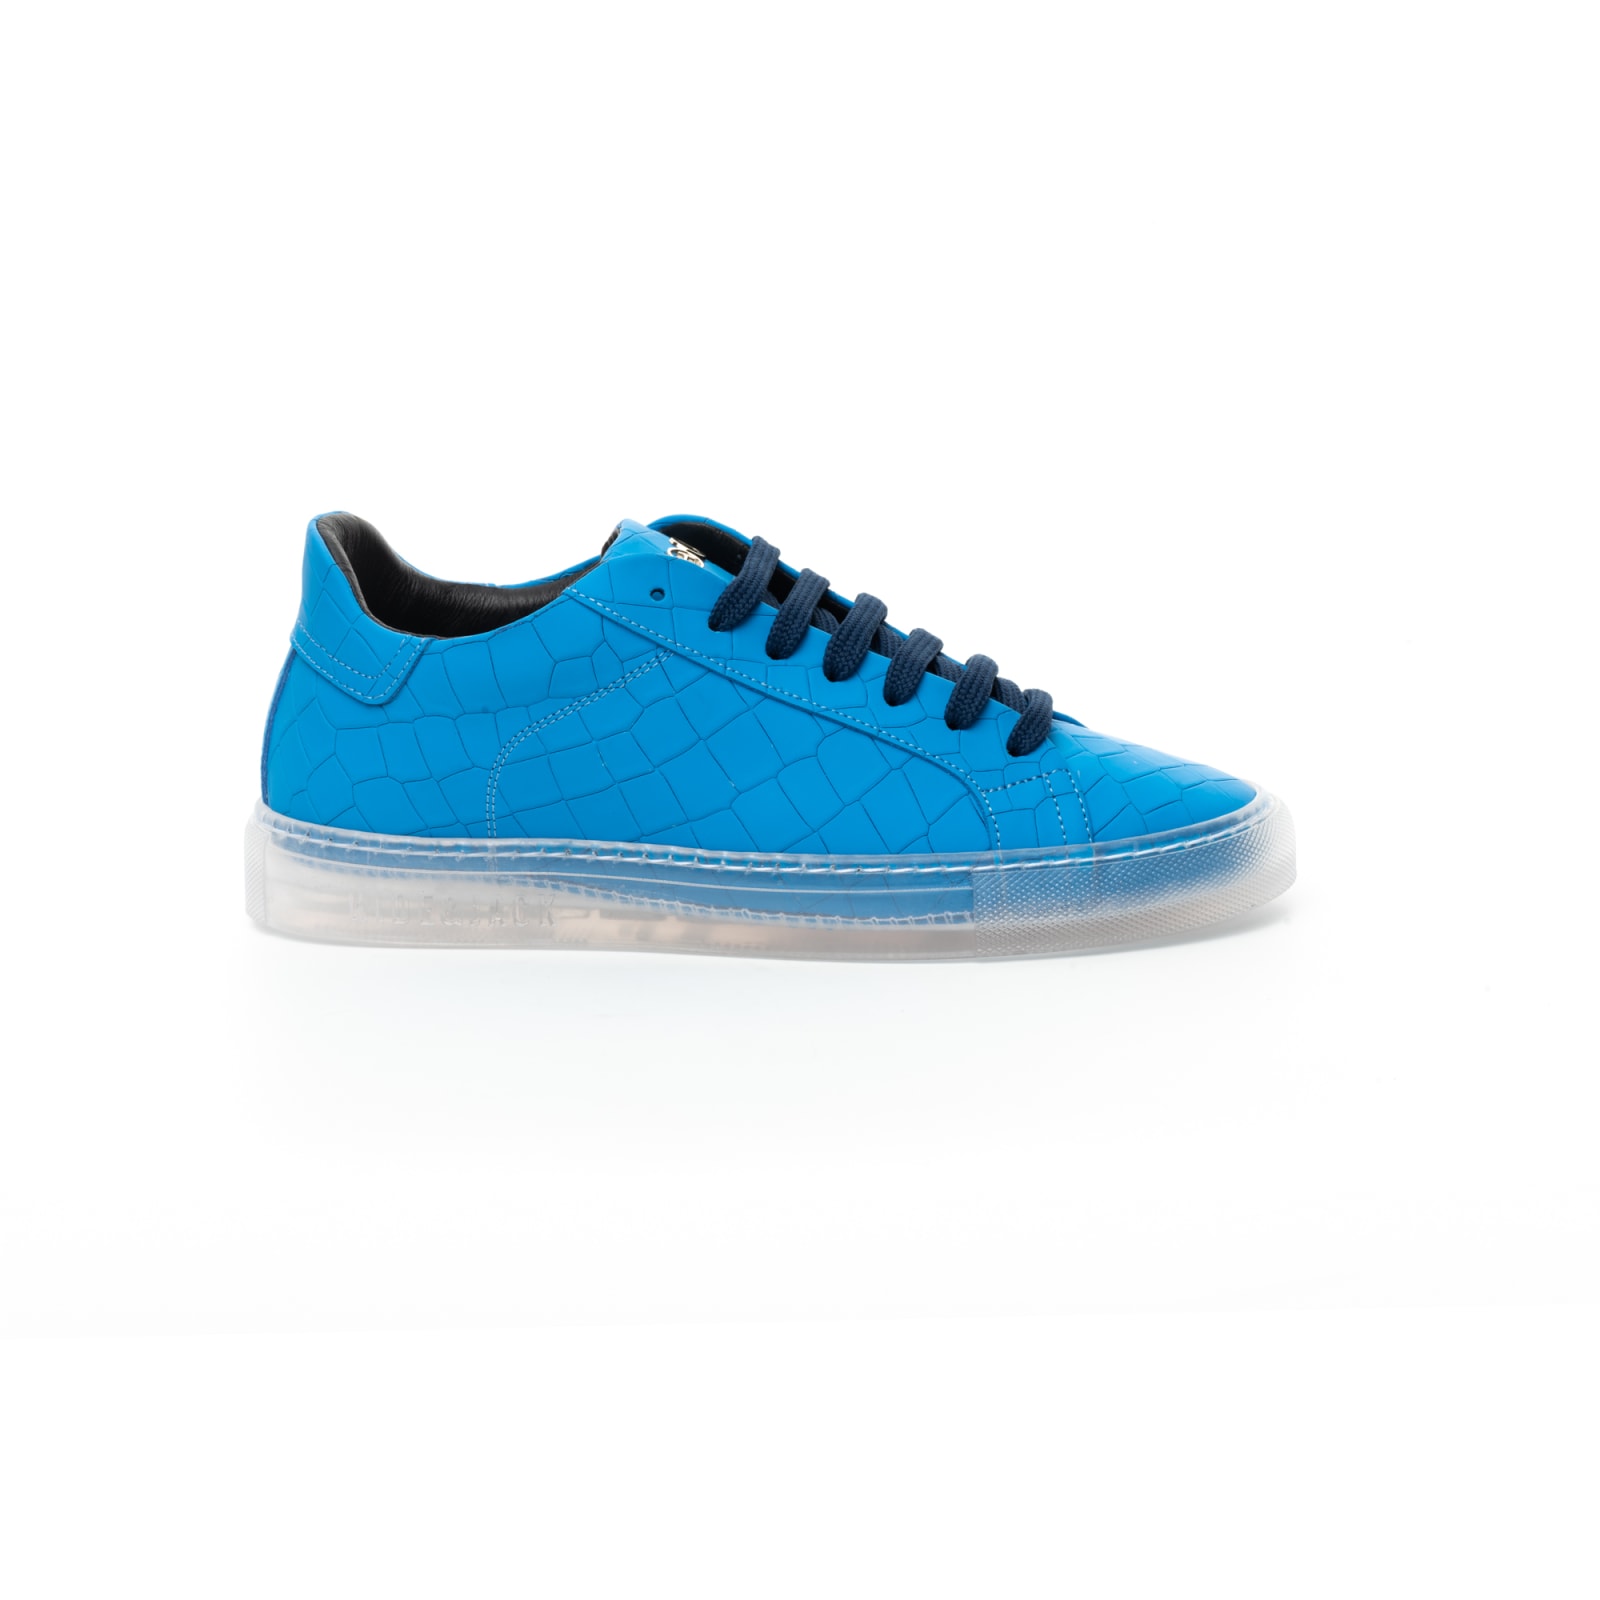 Hide & Jack Low Top Sneaker - Essence Fluo Blue Trb